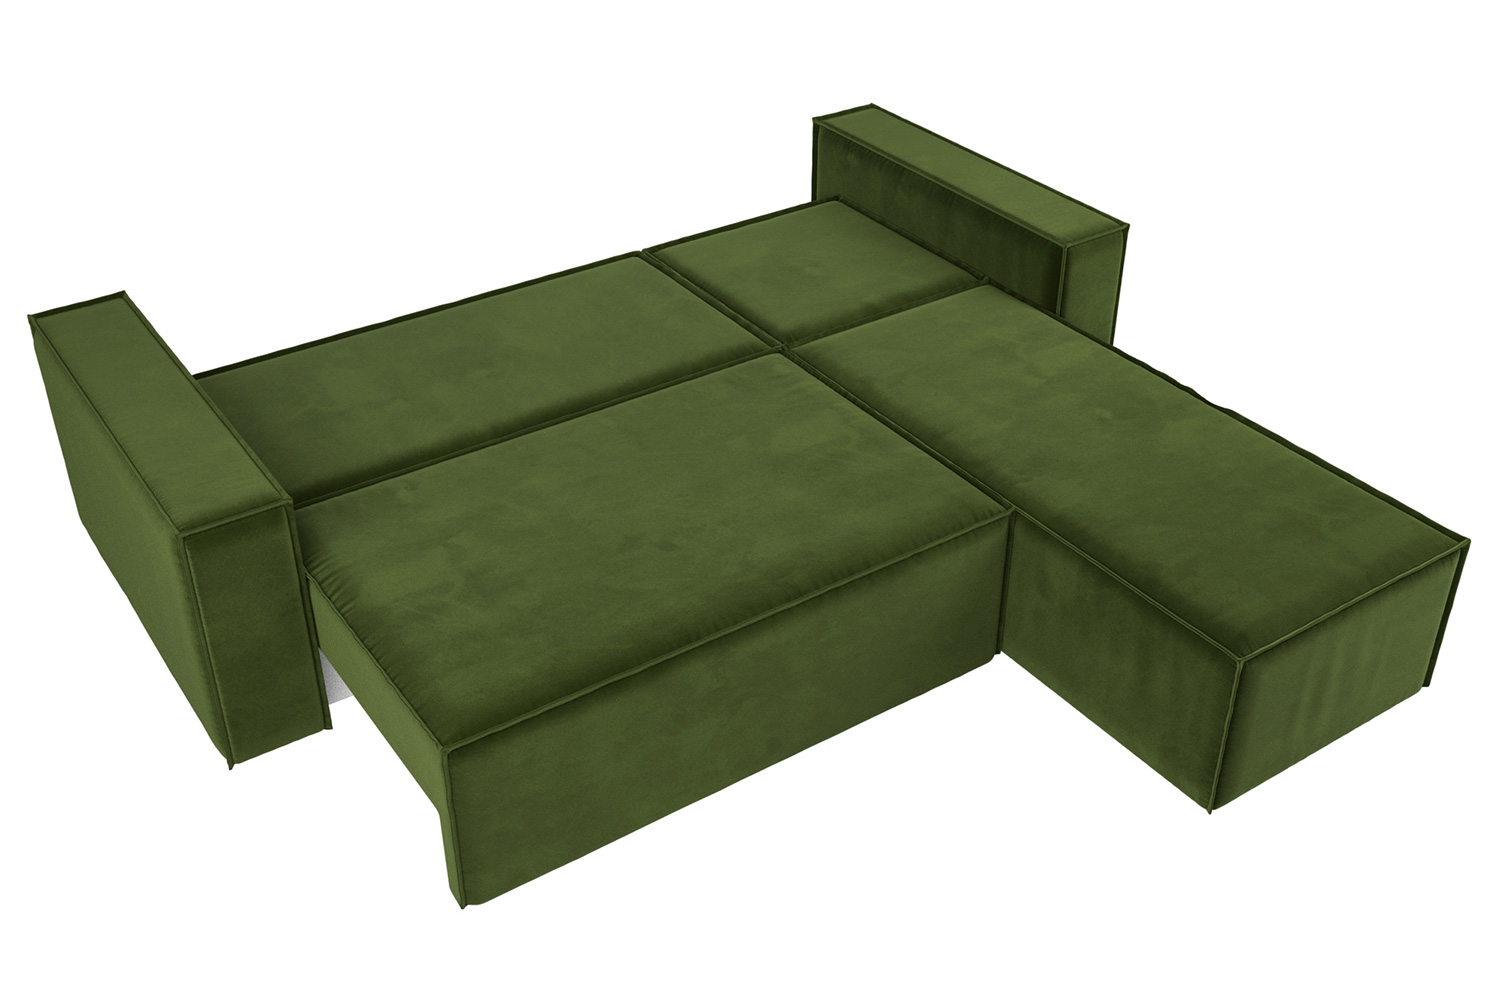 Объем дивана в кубических метрах для перевозки